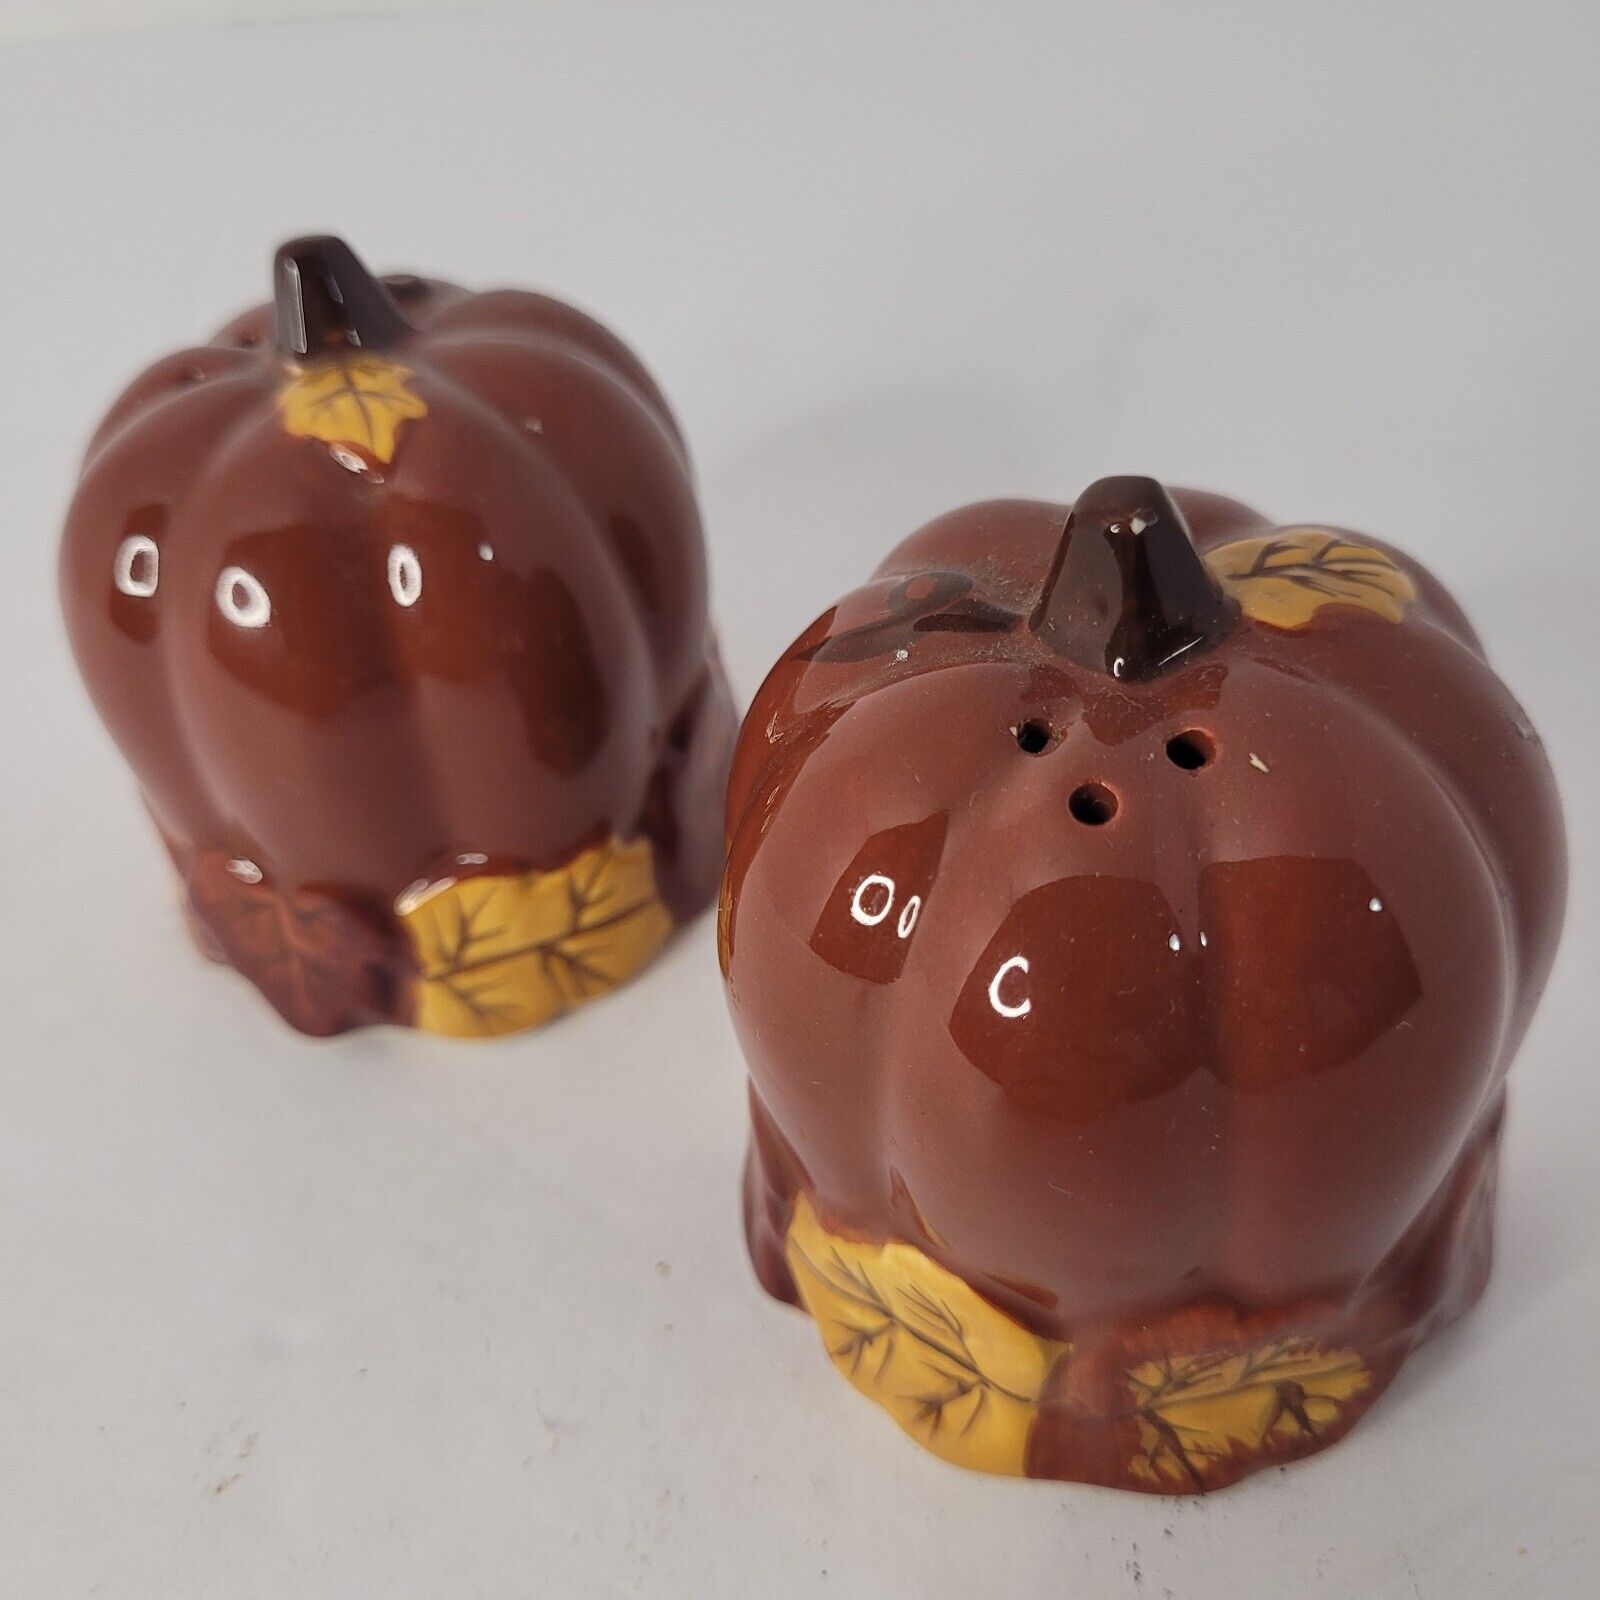 Essential Home Fall/Autumn Pumpkin & Leaf Ceramic Salt & Pepper Shakers